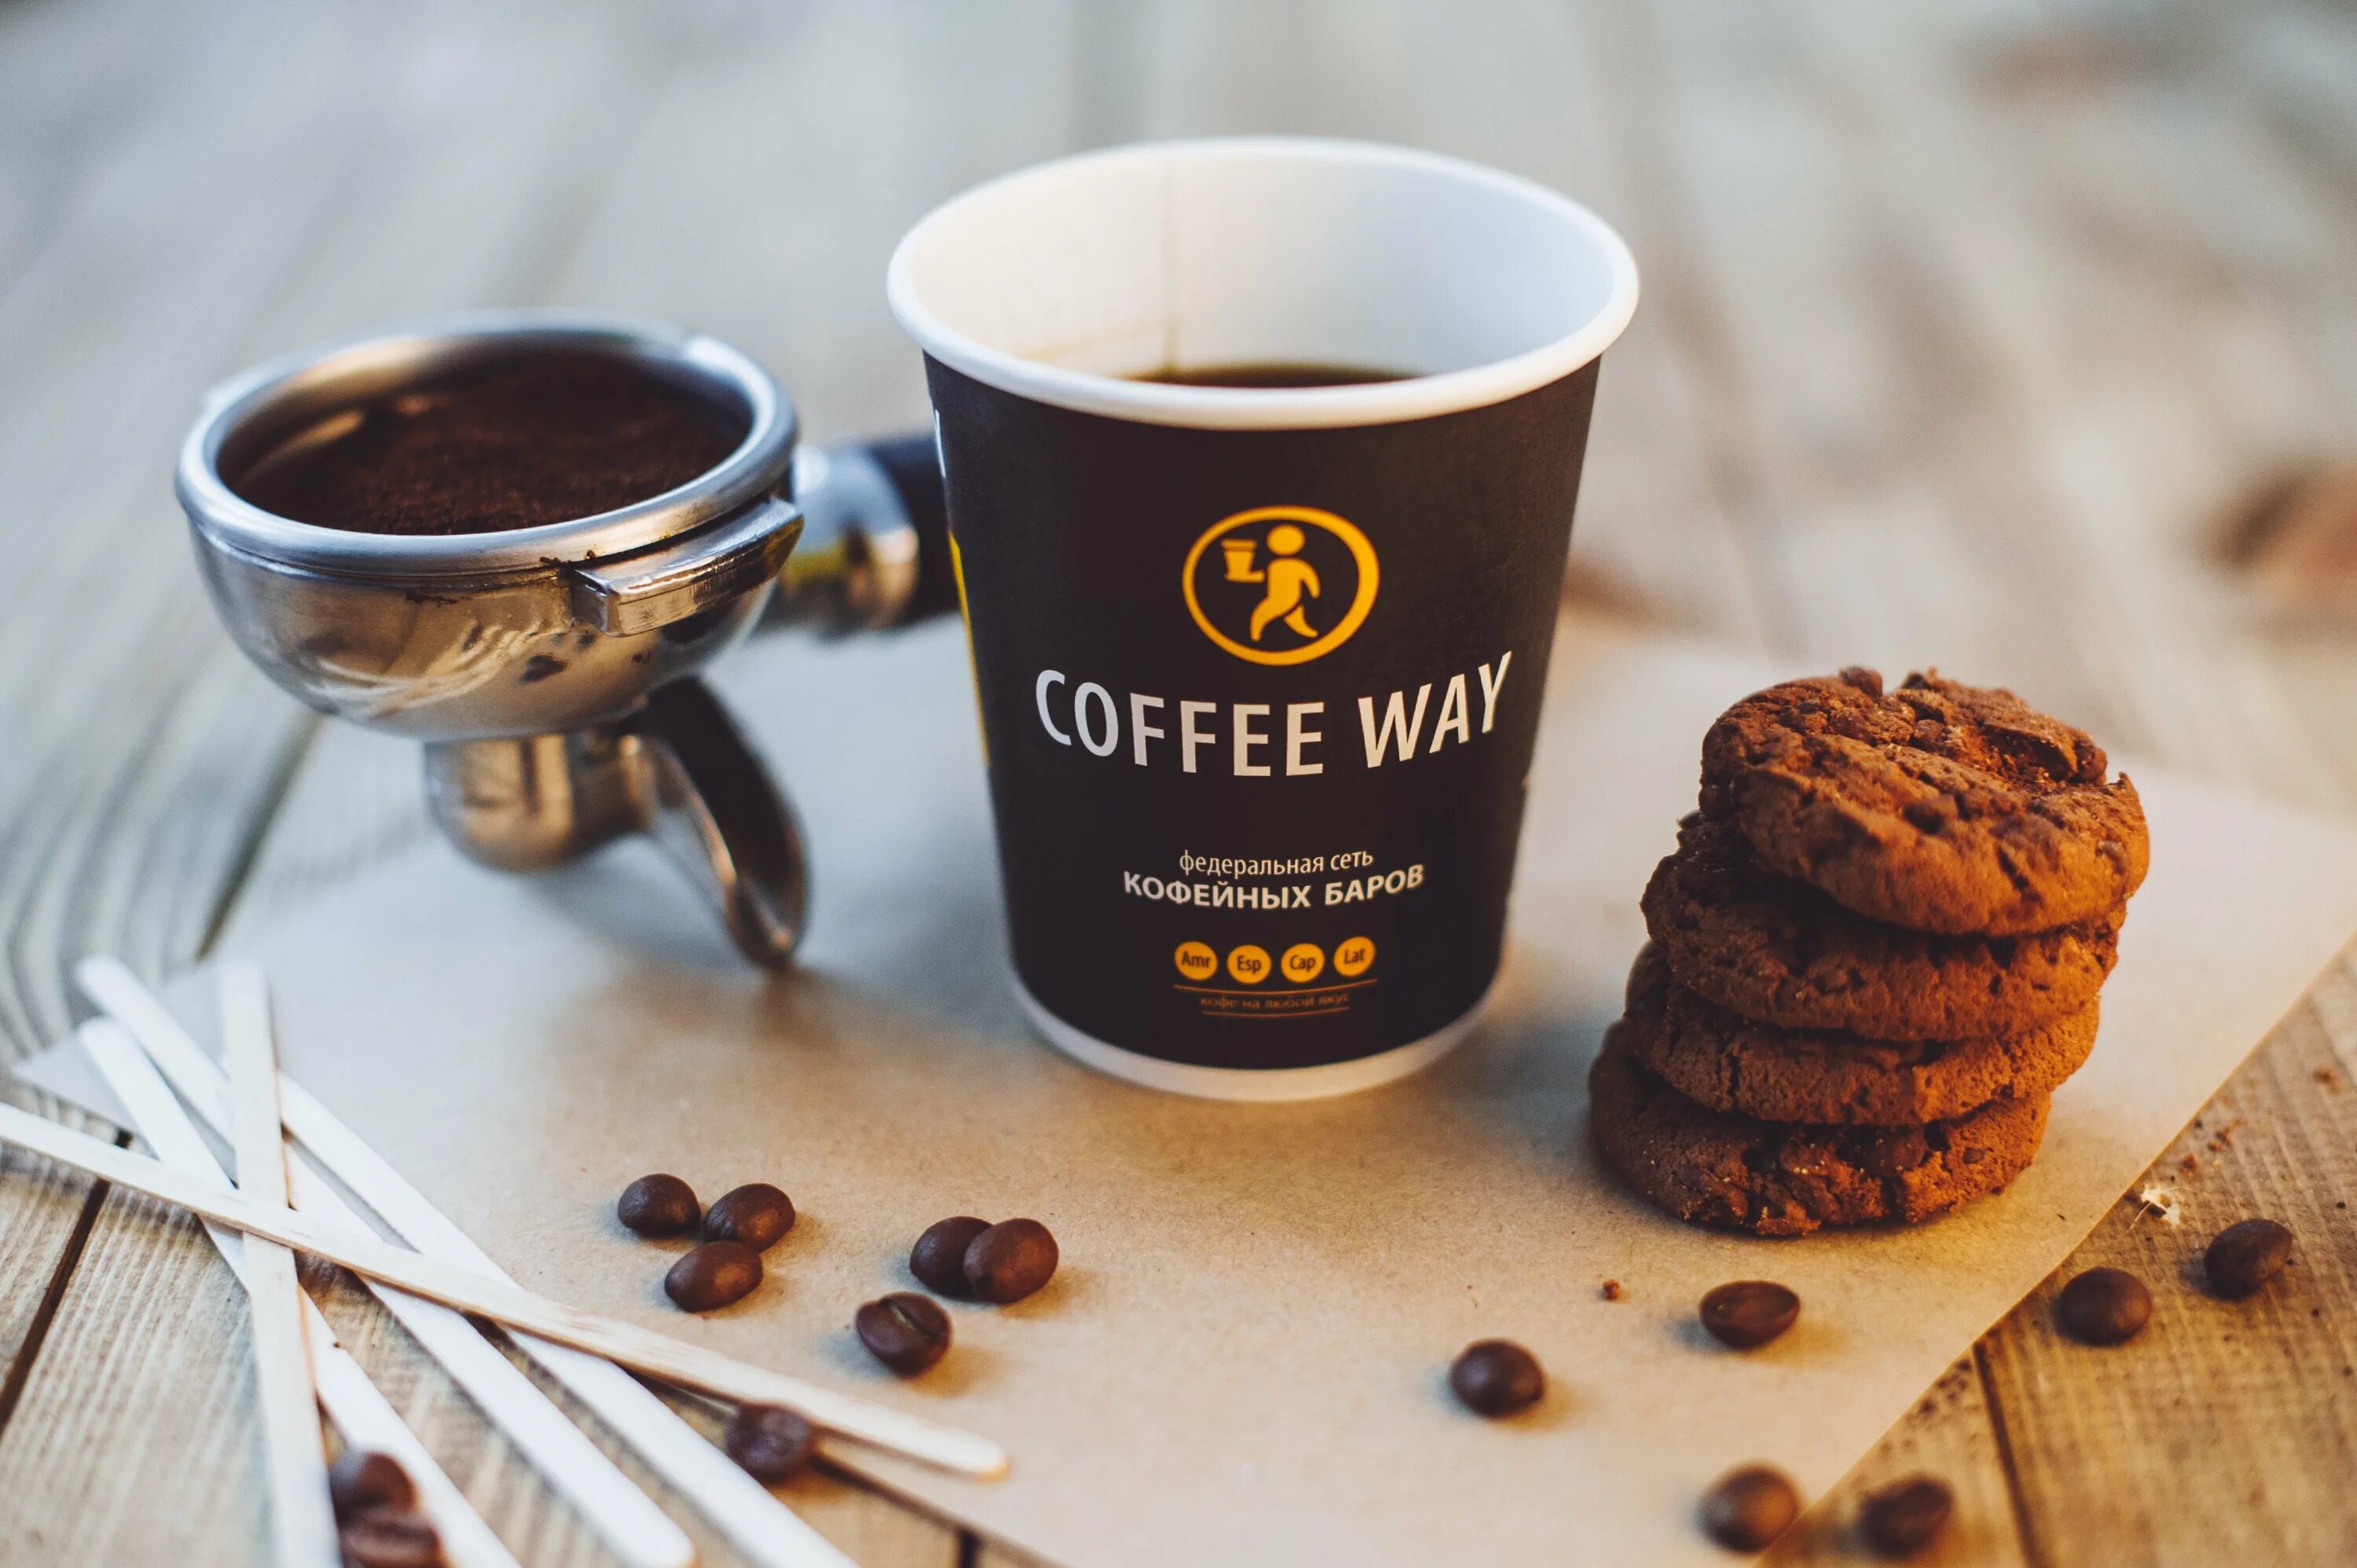 Кофейня "Coffee way" (Донецк). Реклама кофе. Реклама кофейни. Кофе в кофейне. Кофе кис